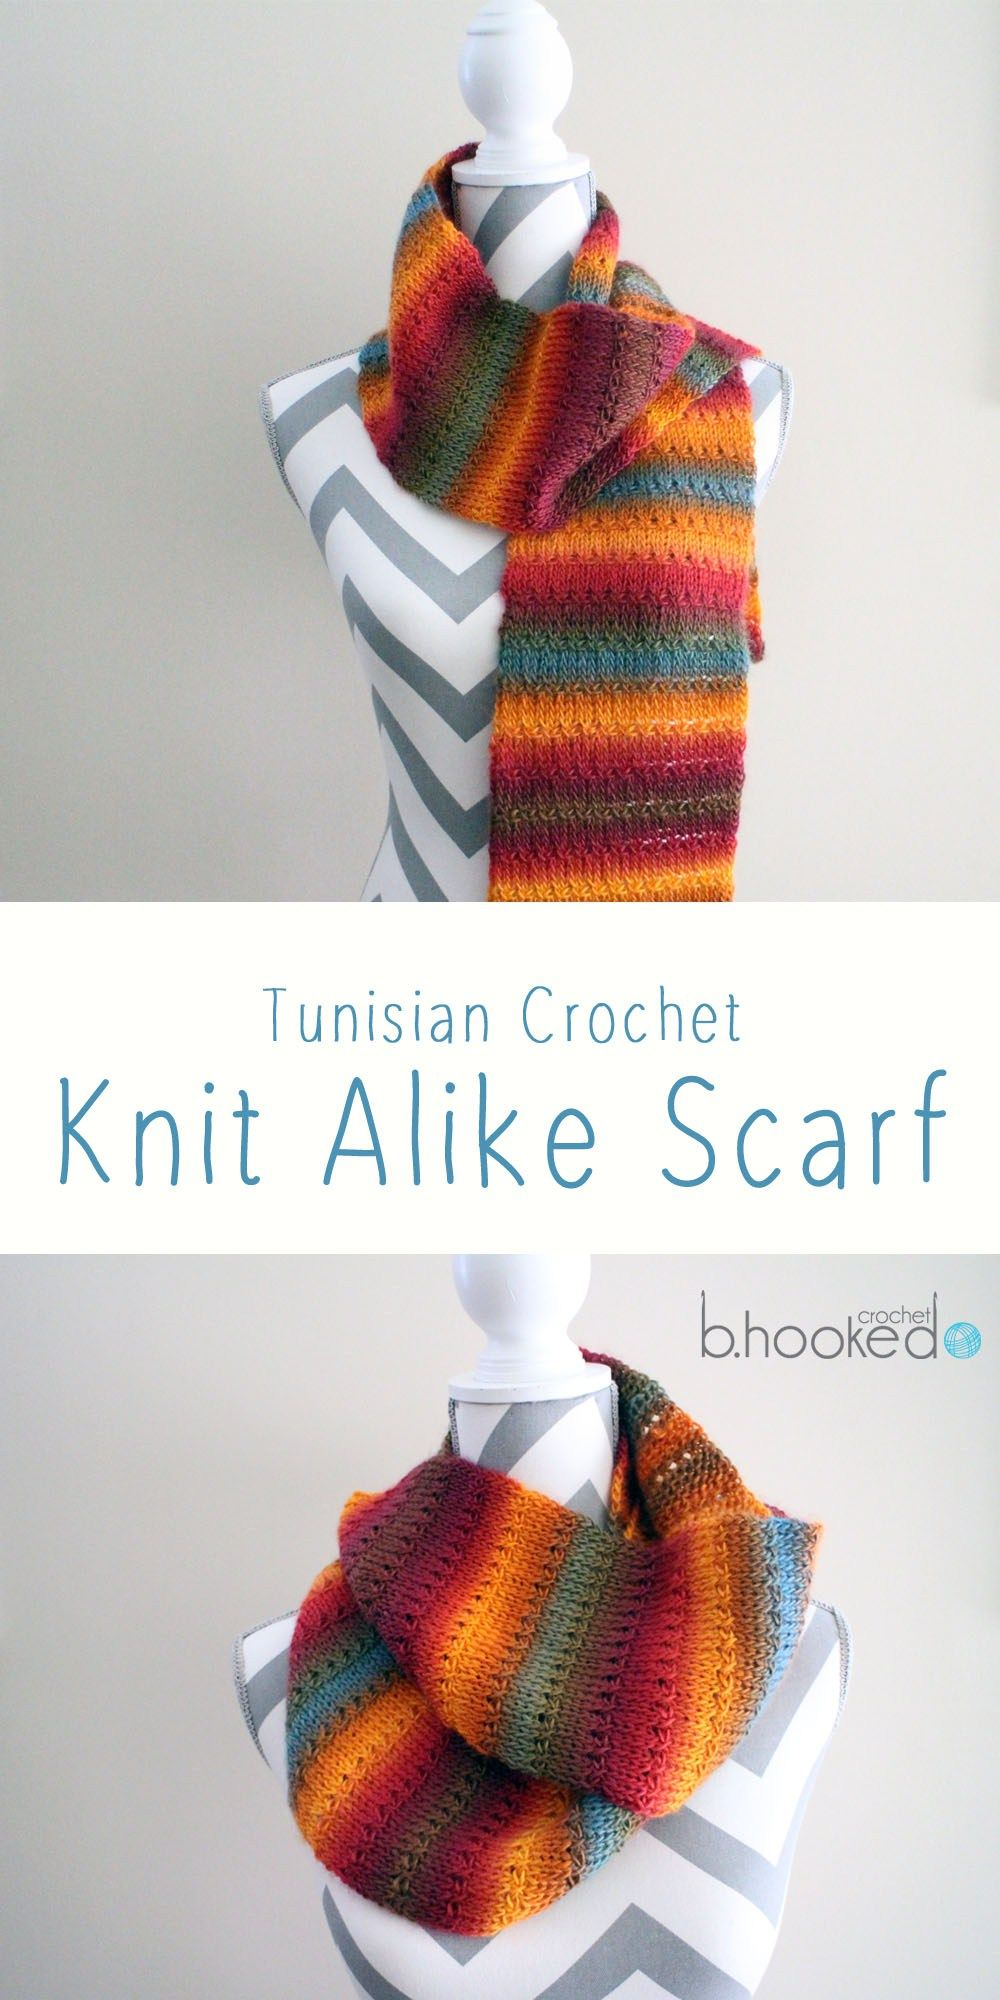 Hooked On Crochet Free Patterns Knit Alike Tunisian Crochet Scarf Free Pattern Tutorial Bhooked